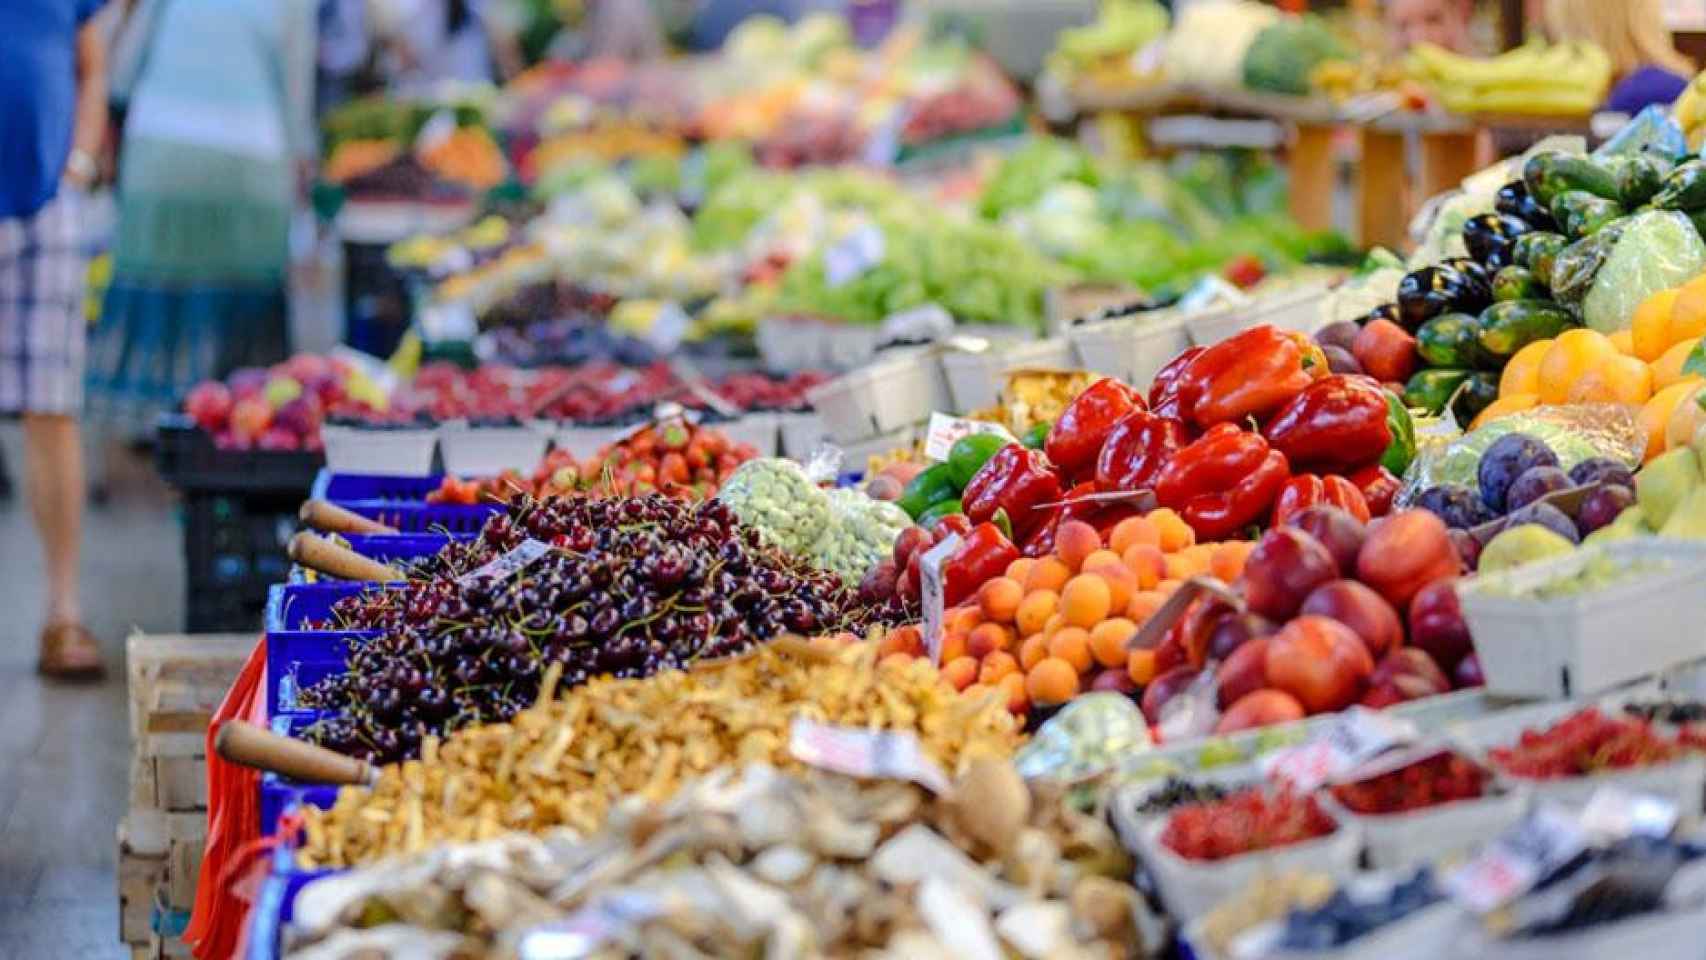 Frutas y verduras en un mercado / PEXELS